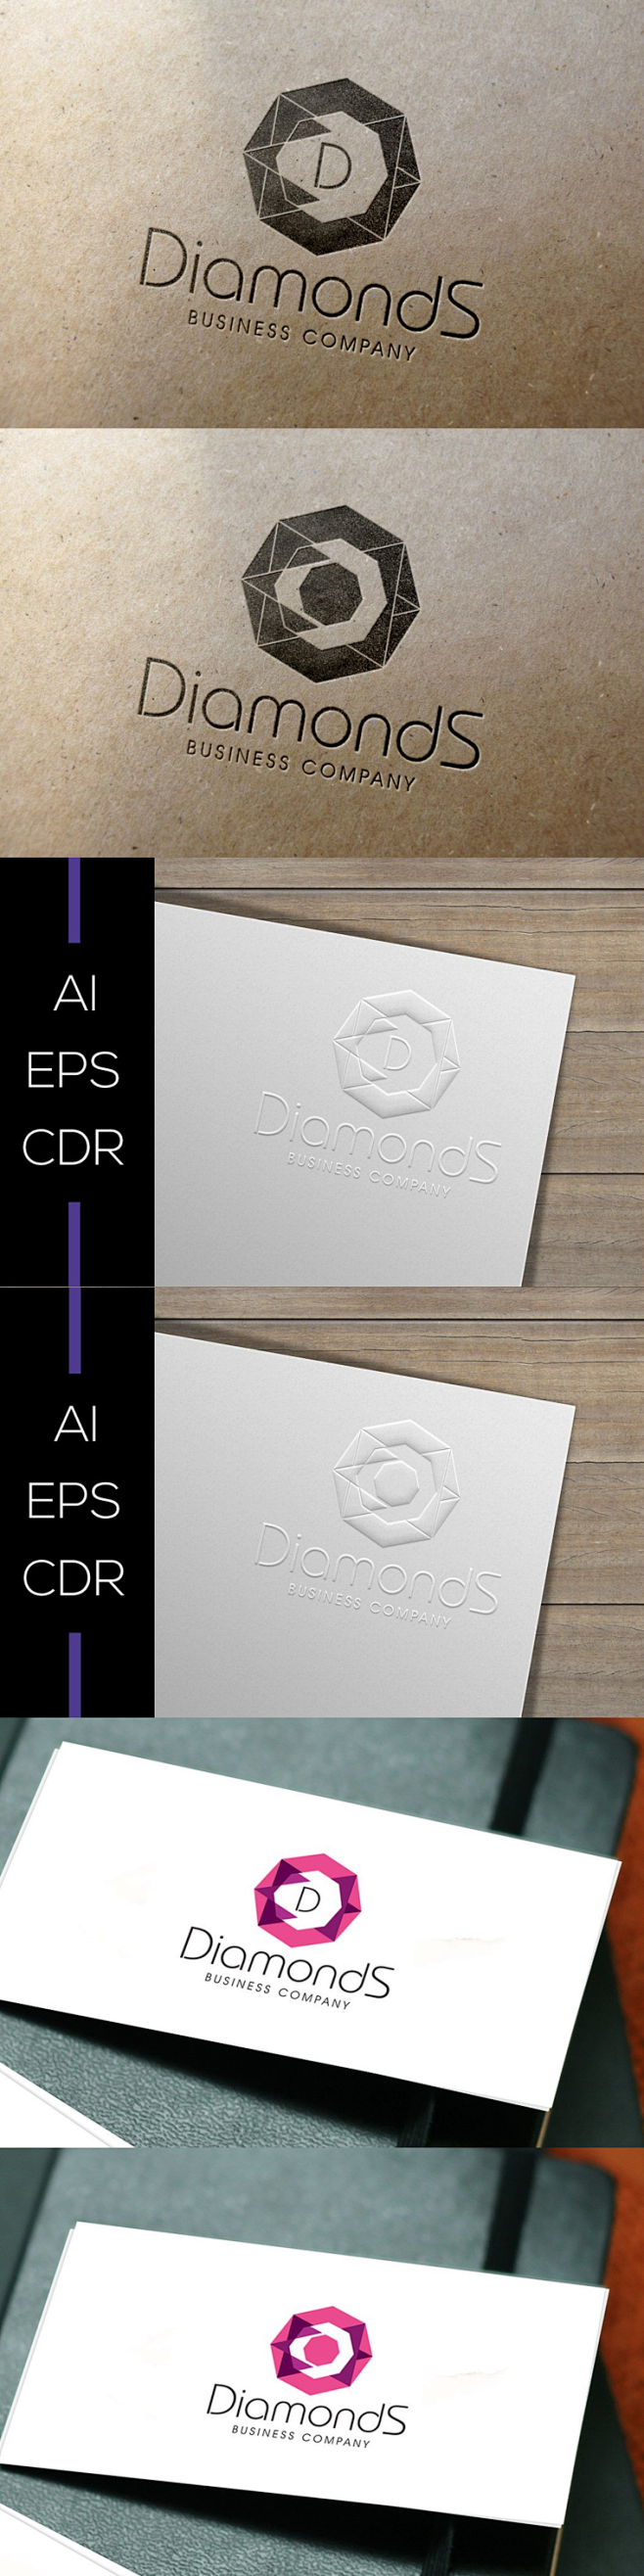 免费好用的企业logo模版[CDR,EP...